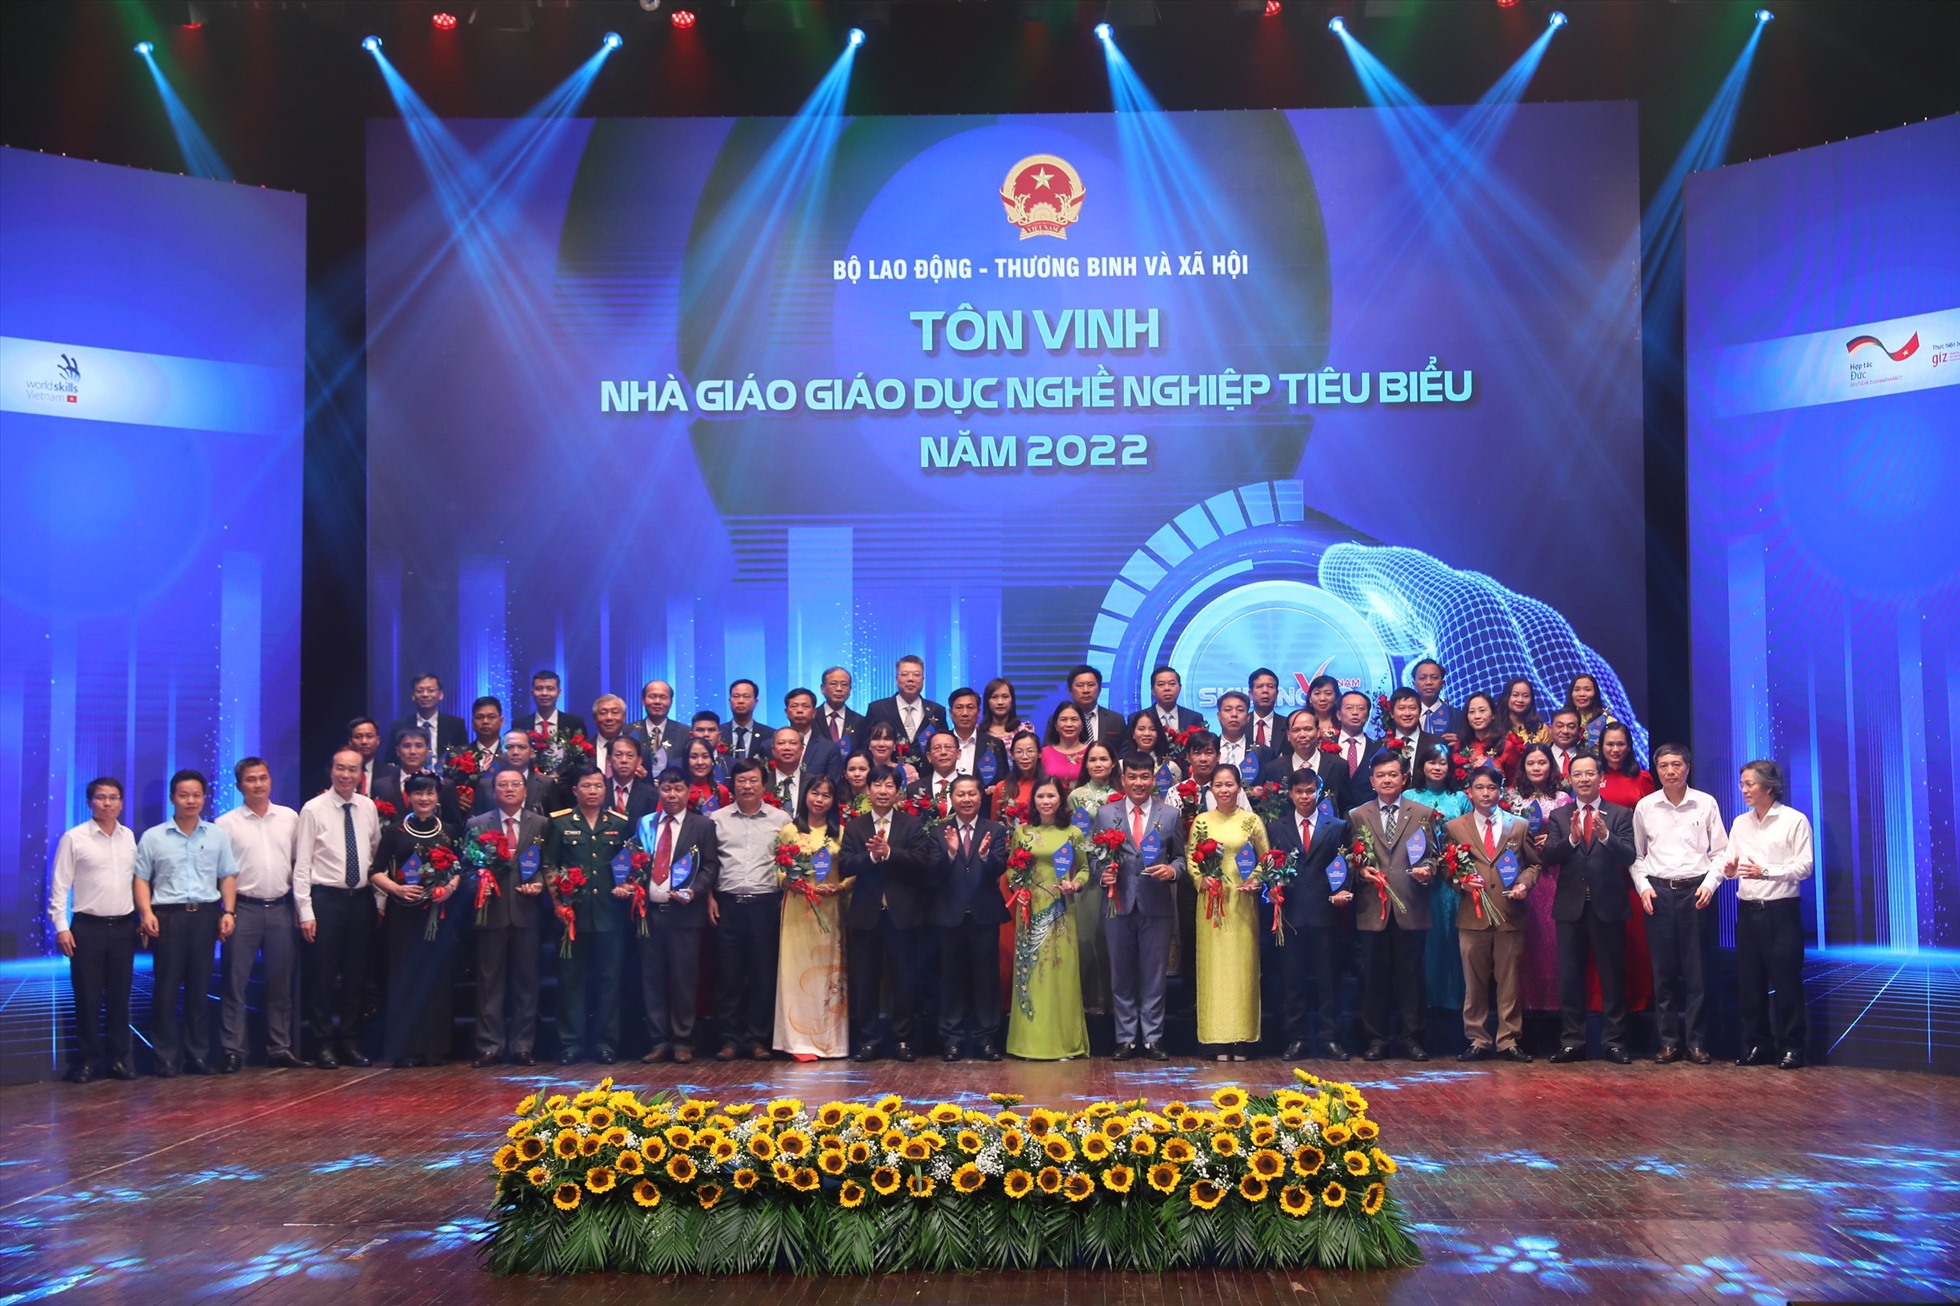 Tổng cục Giáo dục nghề nghiệp (Bộ Lao động - Thương binh và Xã hội) tổ chức Kỷ niệm ngày Kỹ năng lao động Việt Nam và tôn vinh 54 nhà giáo giáo dục nghề nghiệp tiêu biểu,